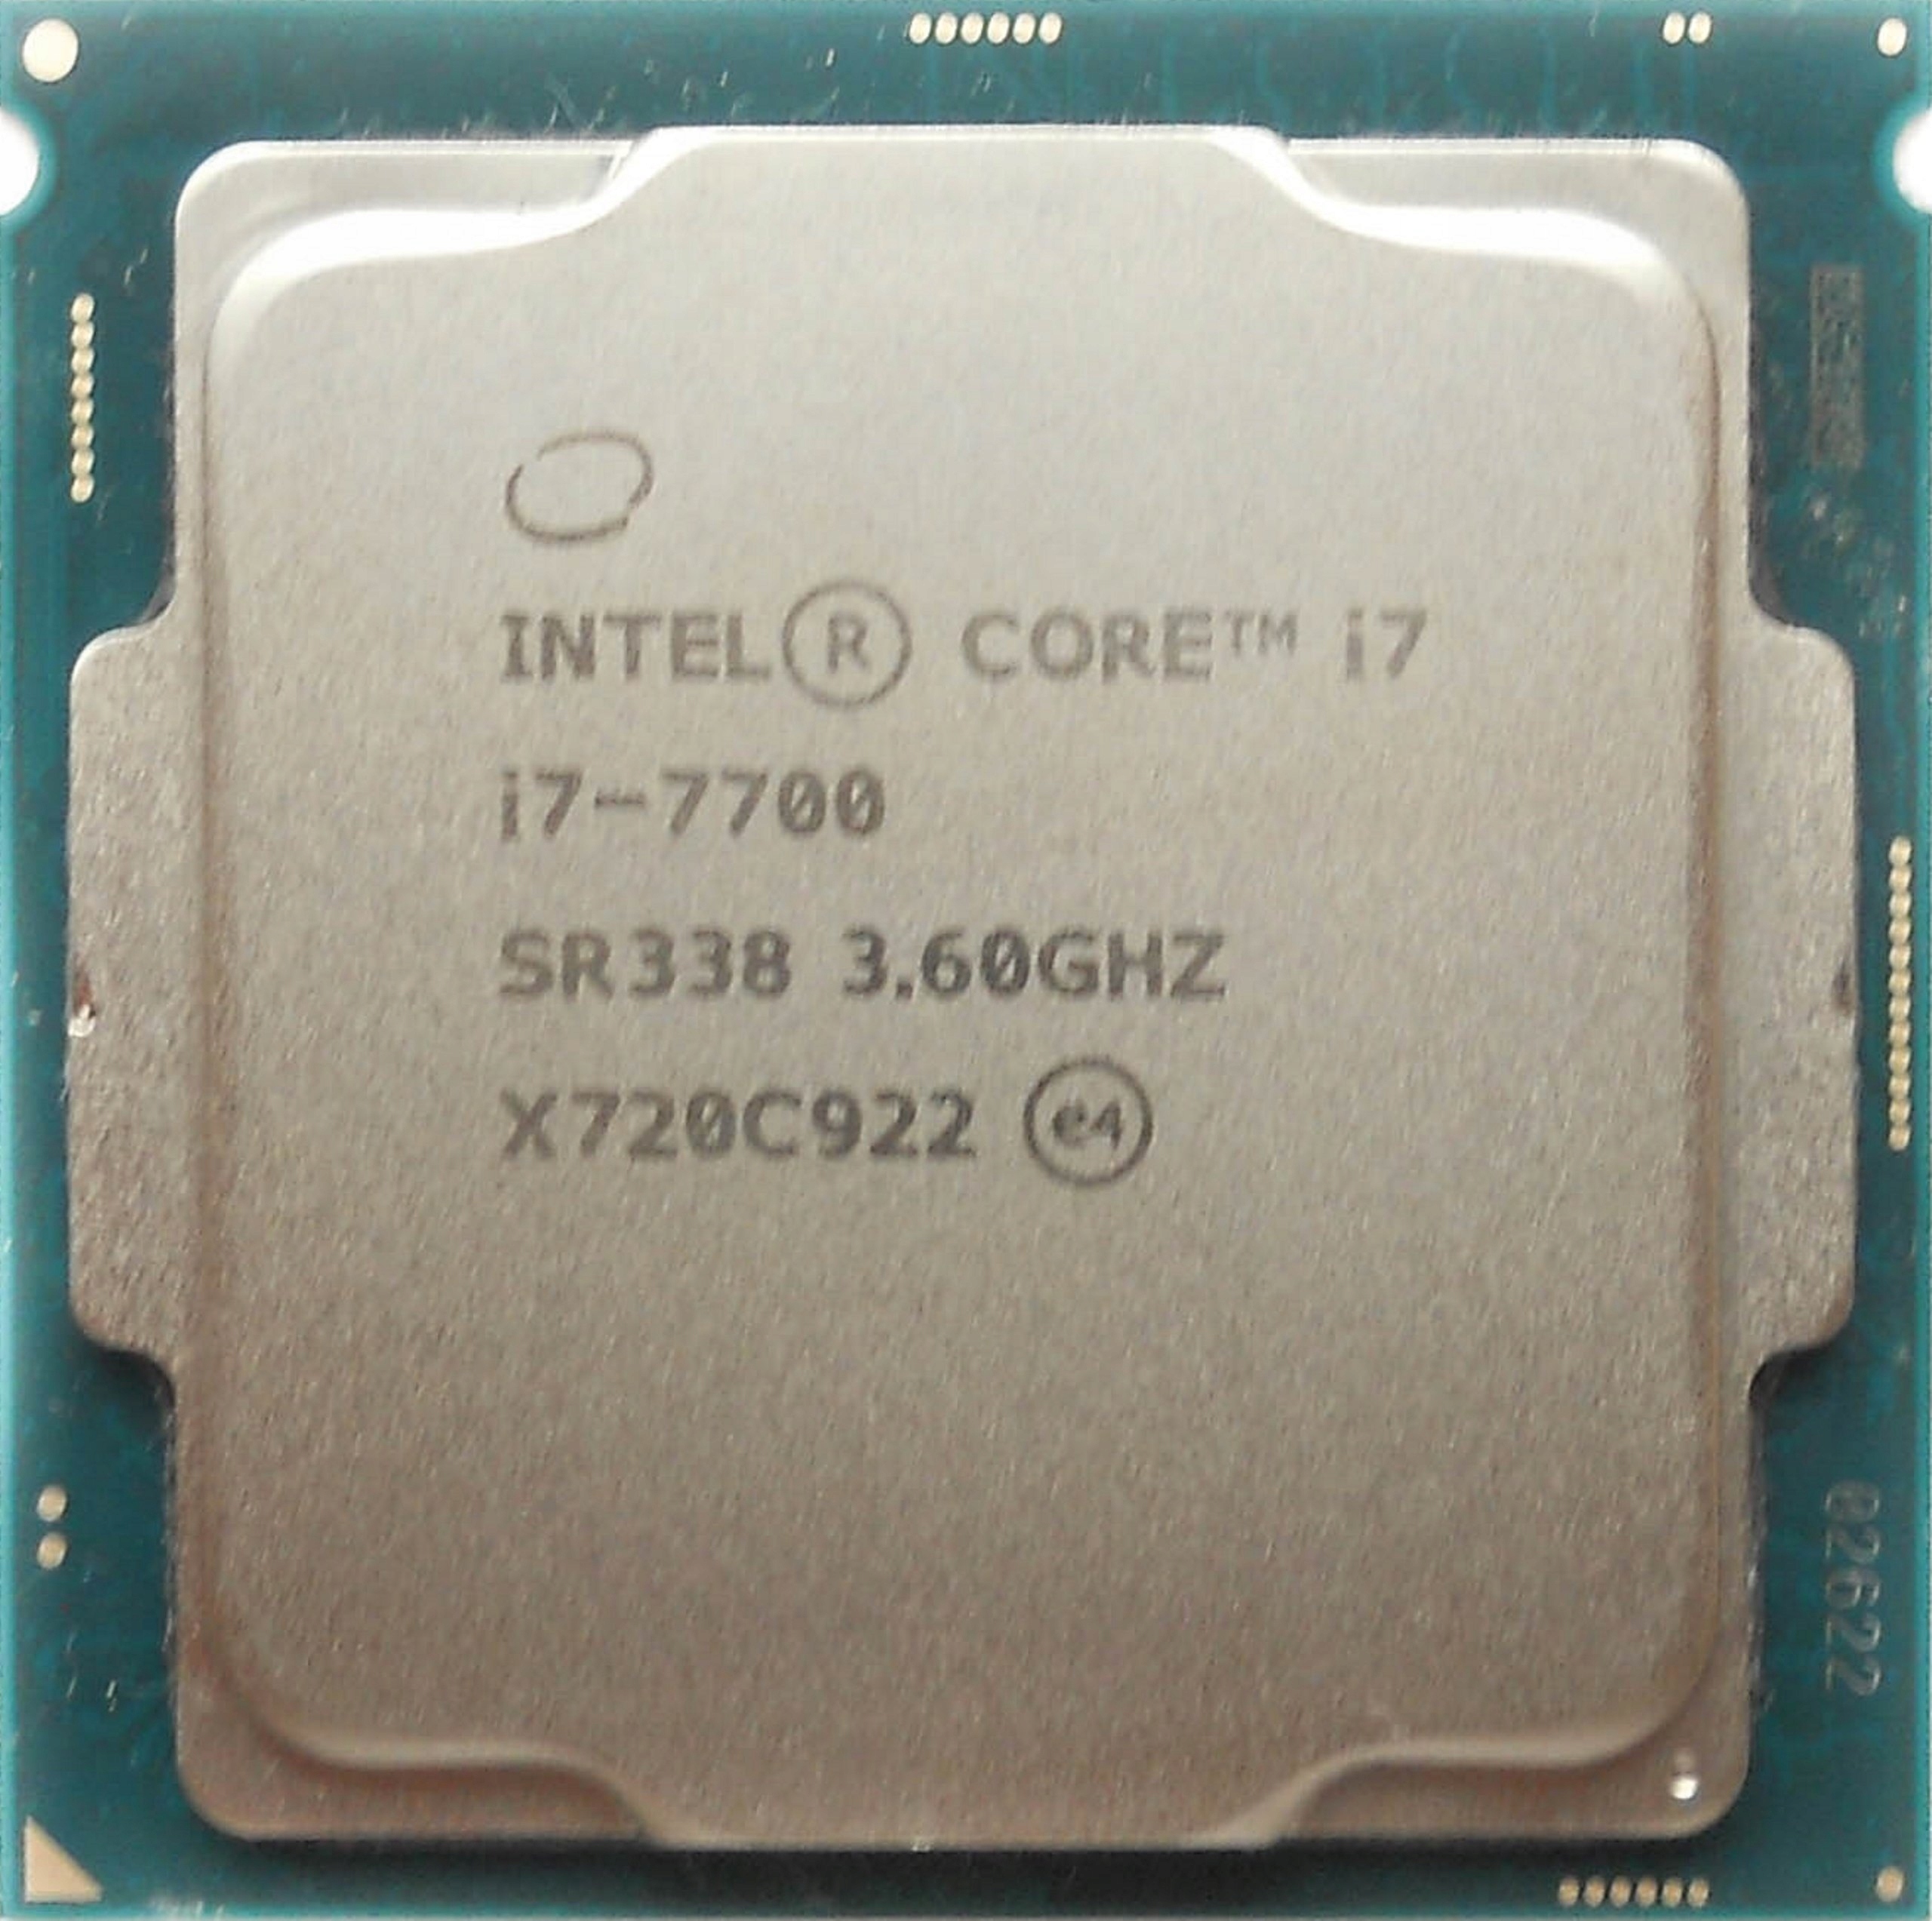 Meekness Calamity swim Procesor Intel Core i7-7700 4x3,6GHz/4,2GHz SR338 w Warszawa - Sklep,  Opinie, Cena w Allegro.pl